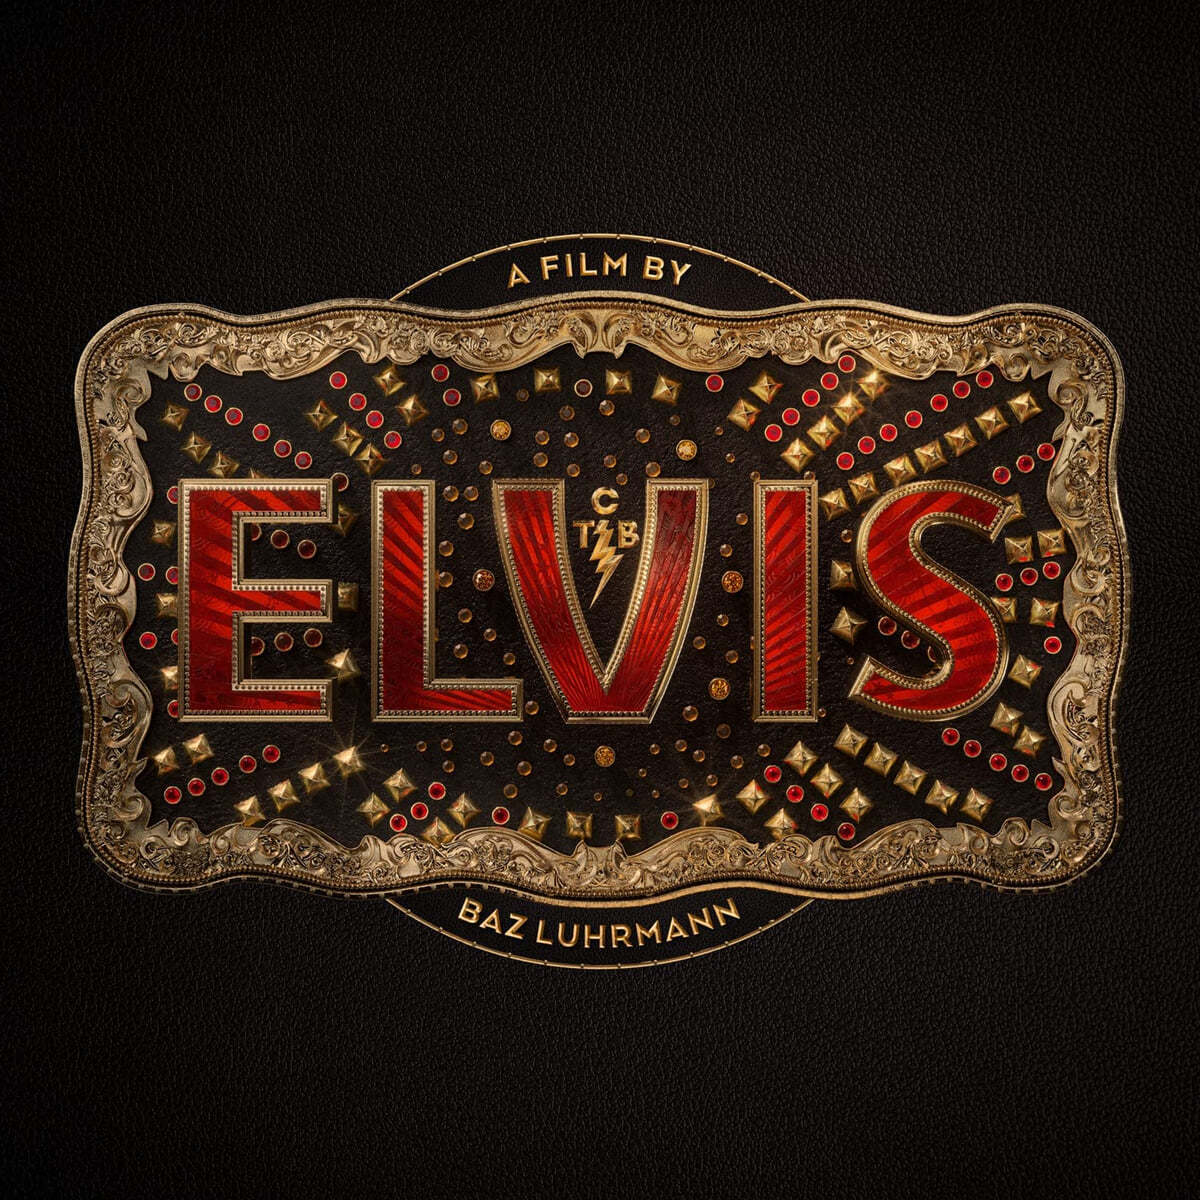 엘비스 영화음악 (Elvis Original Motion Picture Soundtrack)